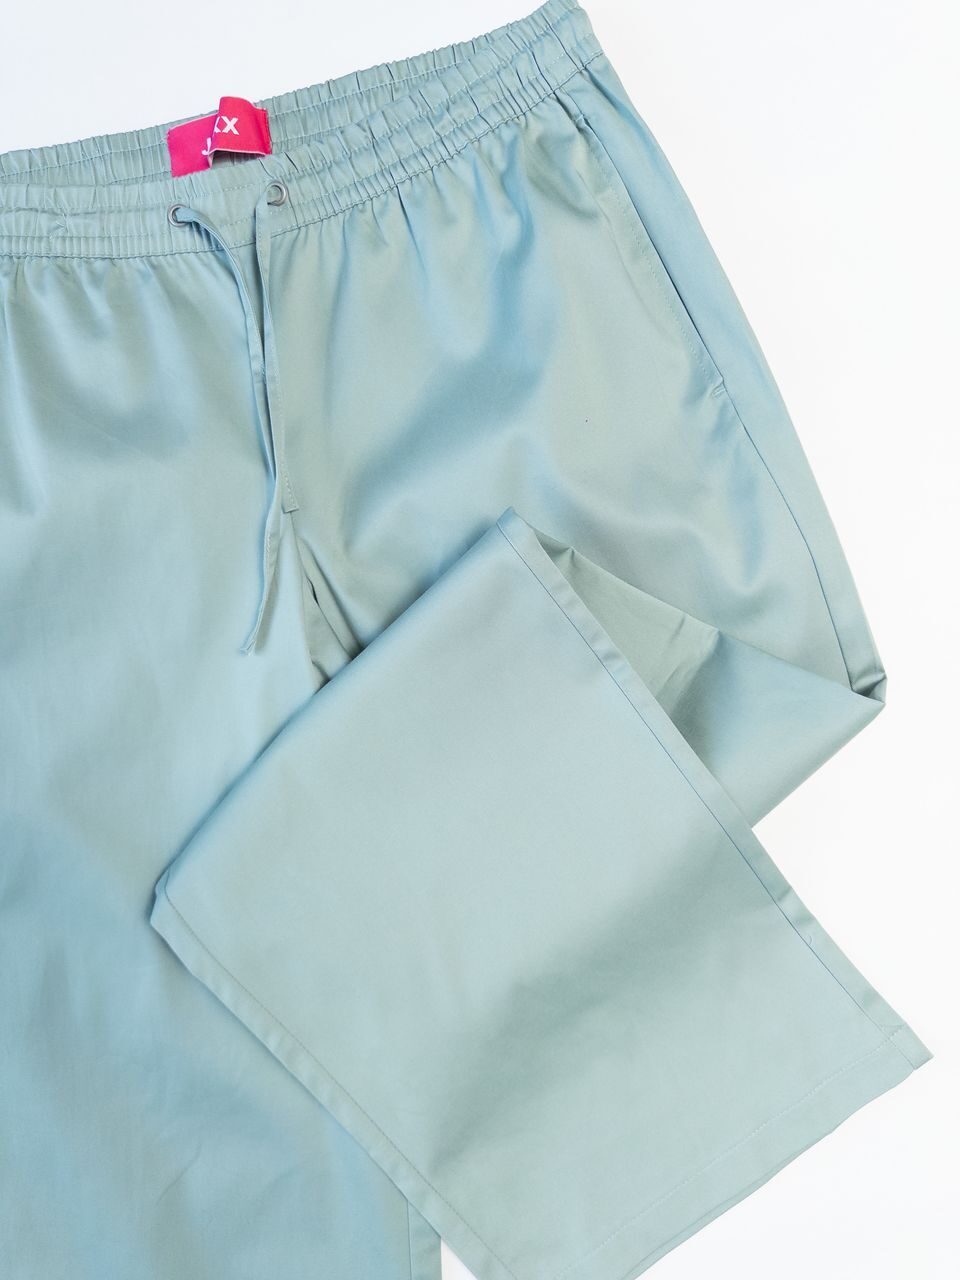 Брюки женские широкие с карманами в поясе резинка из плотного хлопка цвет мятный размер EUR XL (rus 52) JJXX